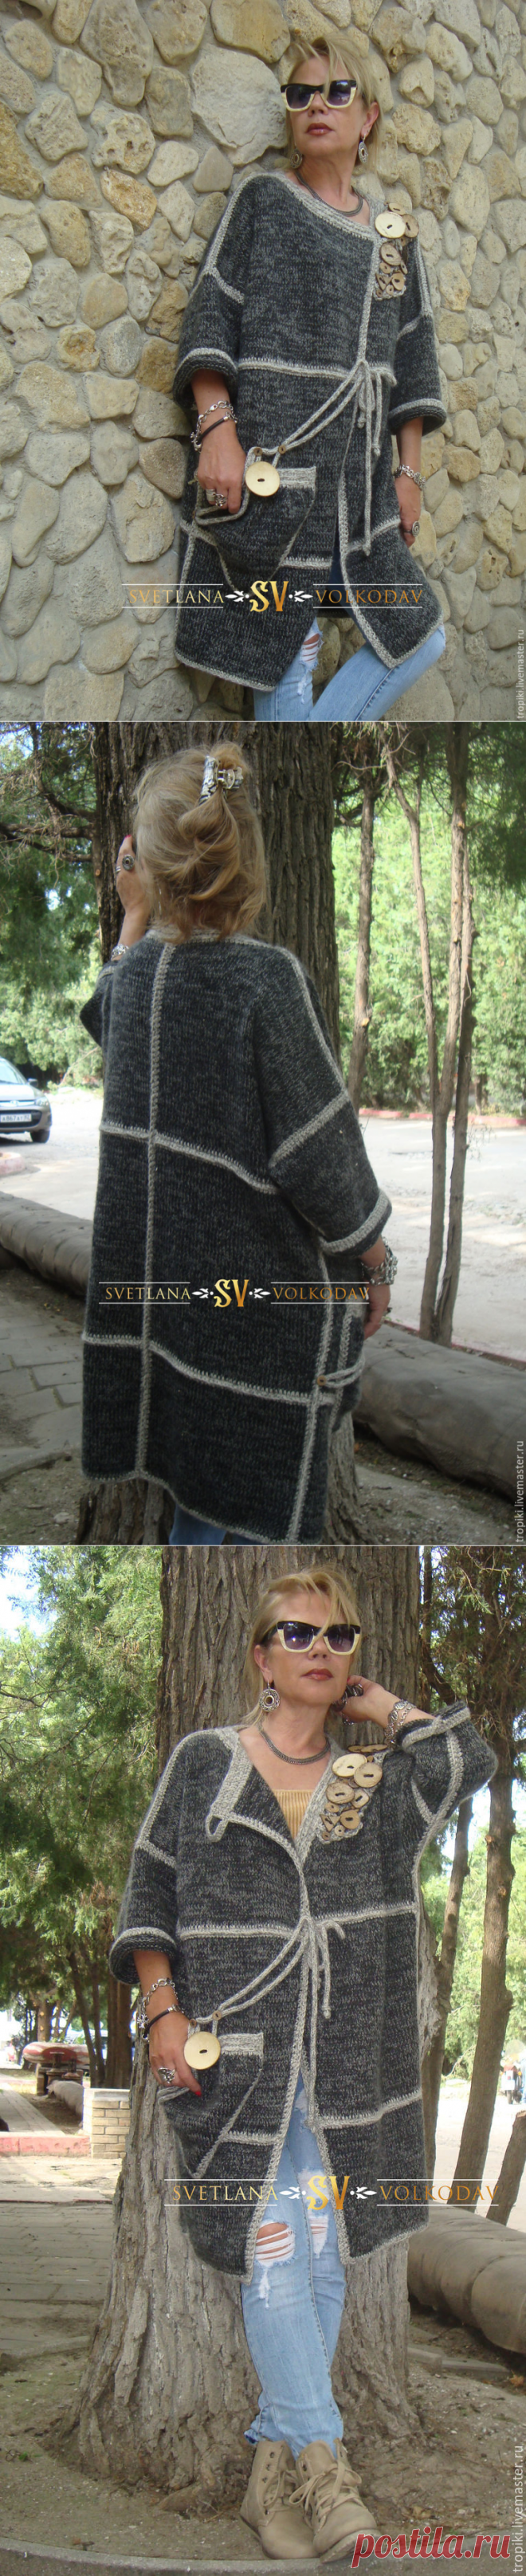 Пальто вязаное с пуговицами авторское – купить в интернет-магазине на Ярмарке Мастеров с доставкой - 9CE3TRU | Керчь.Идеи.